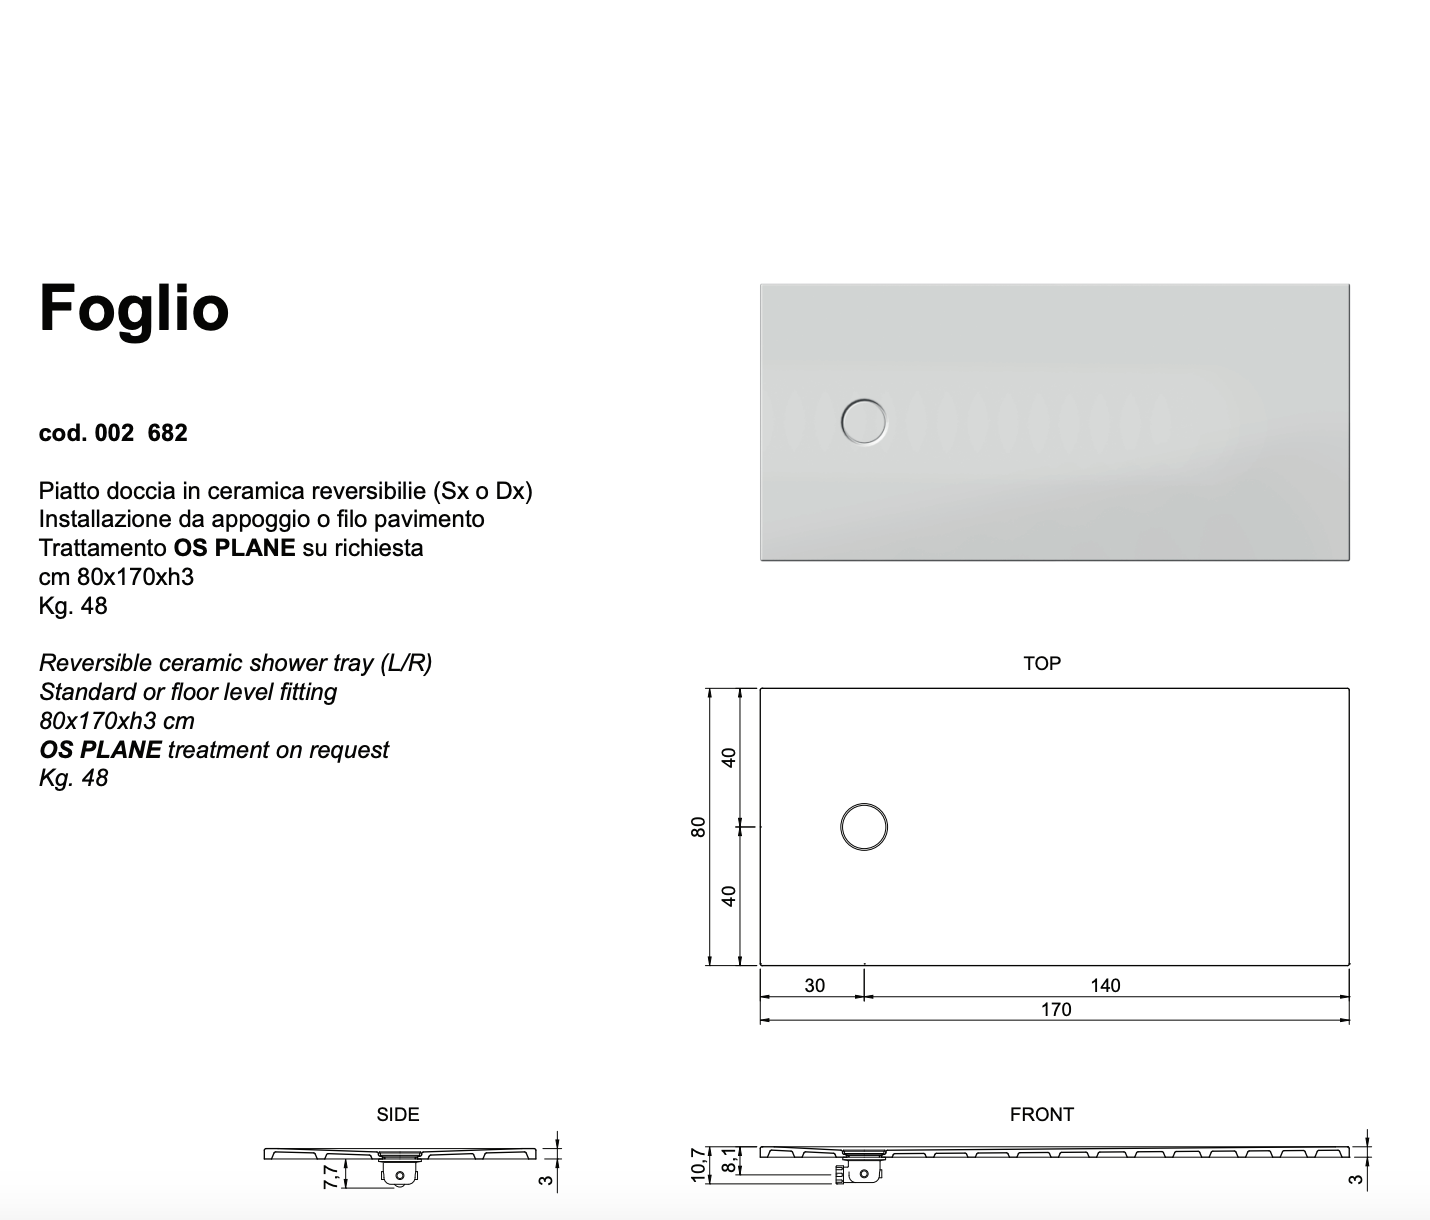 Piatto Doccia Foglio 80x170